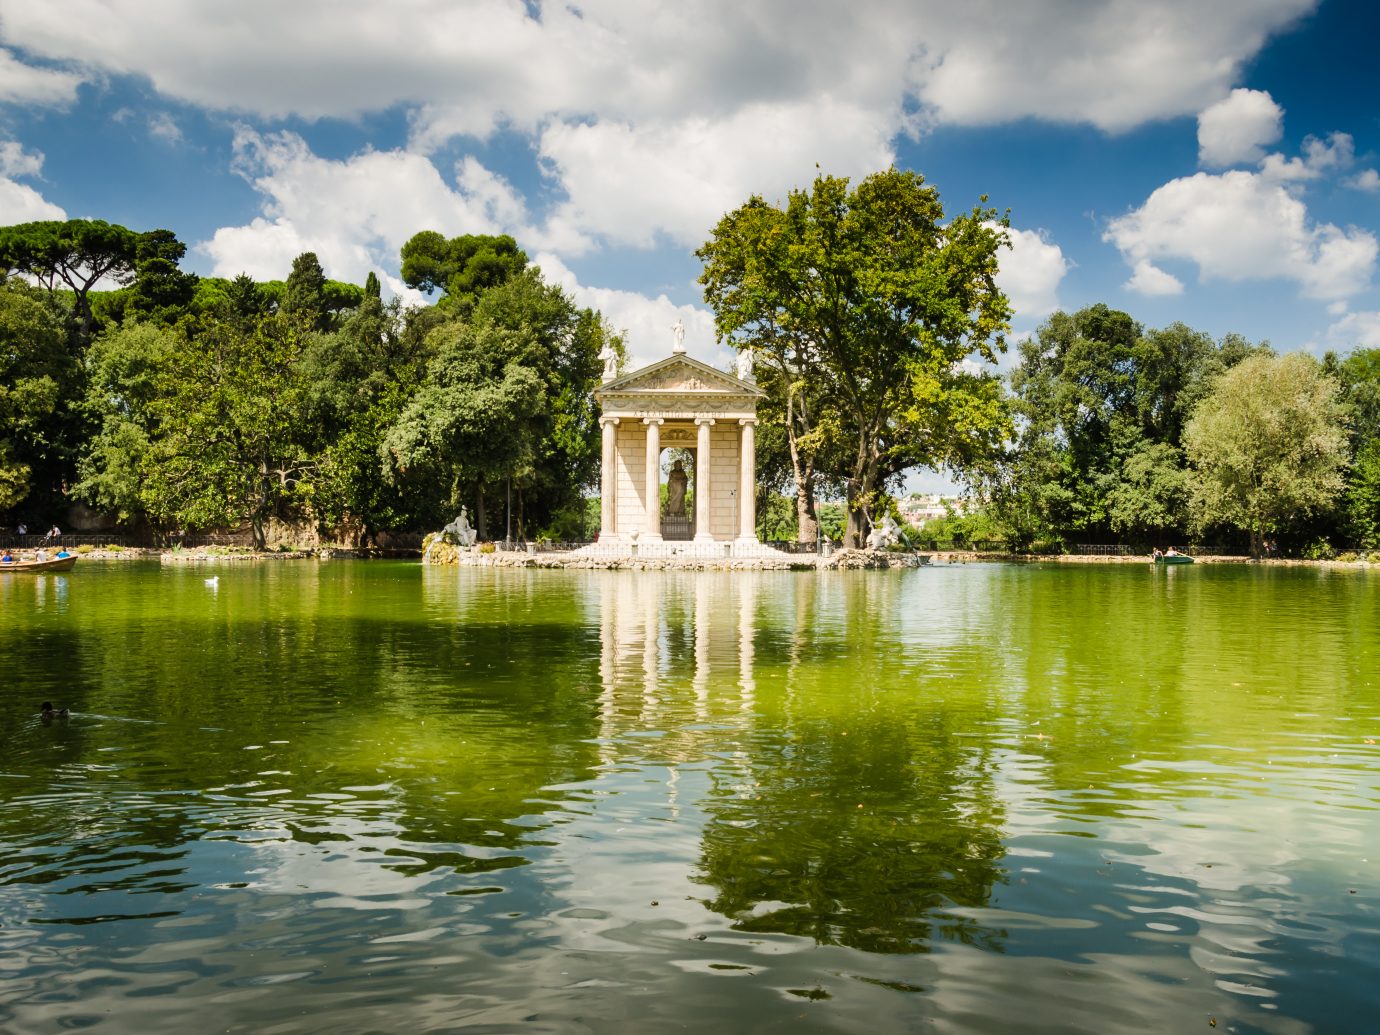 artificial lake on villa borgese garden